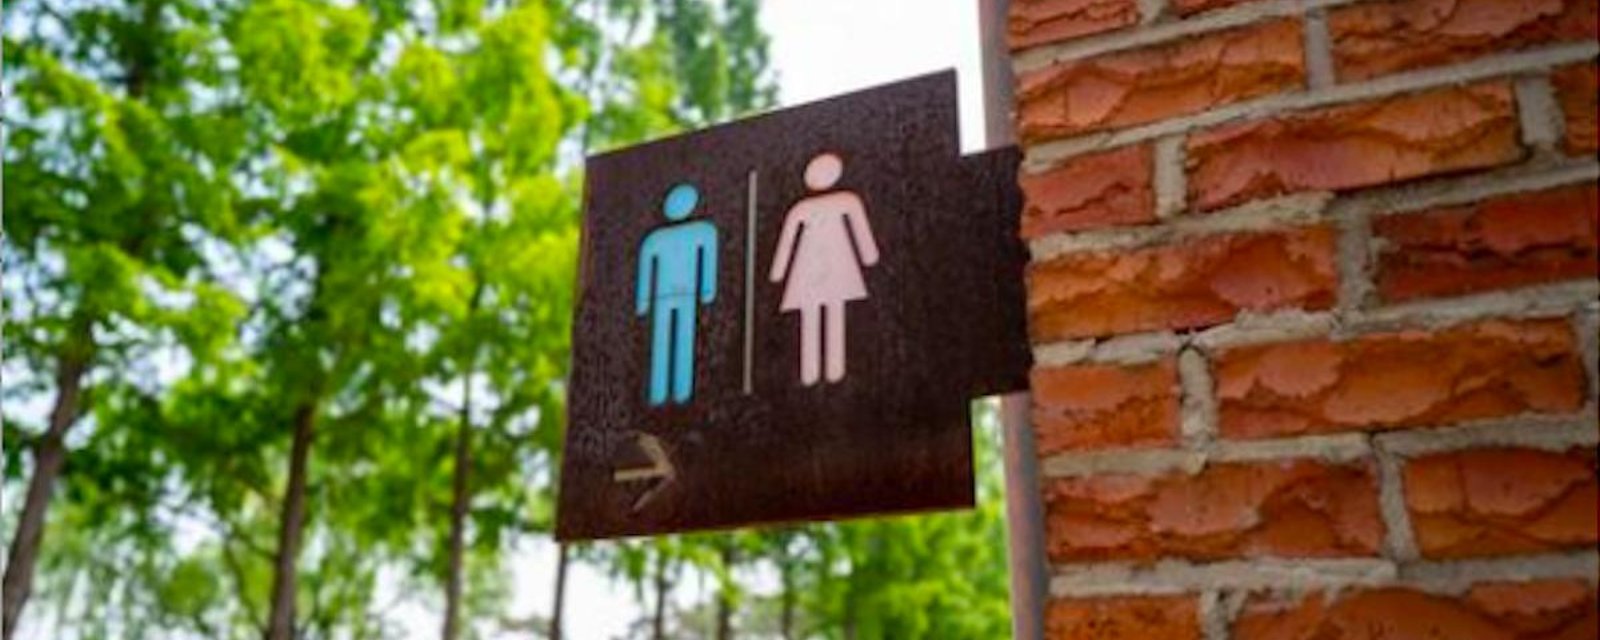 Un nouveau réseau de toilettes ouvertes au public au centre-ville de Montréal